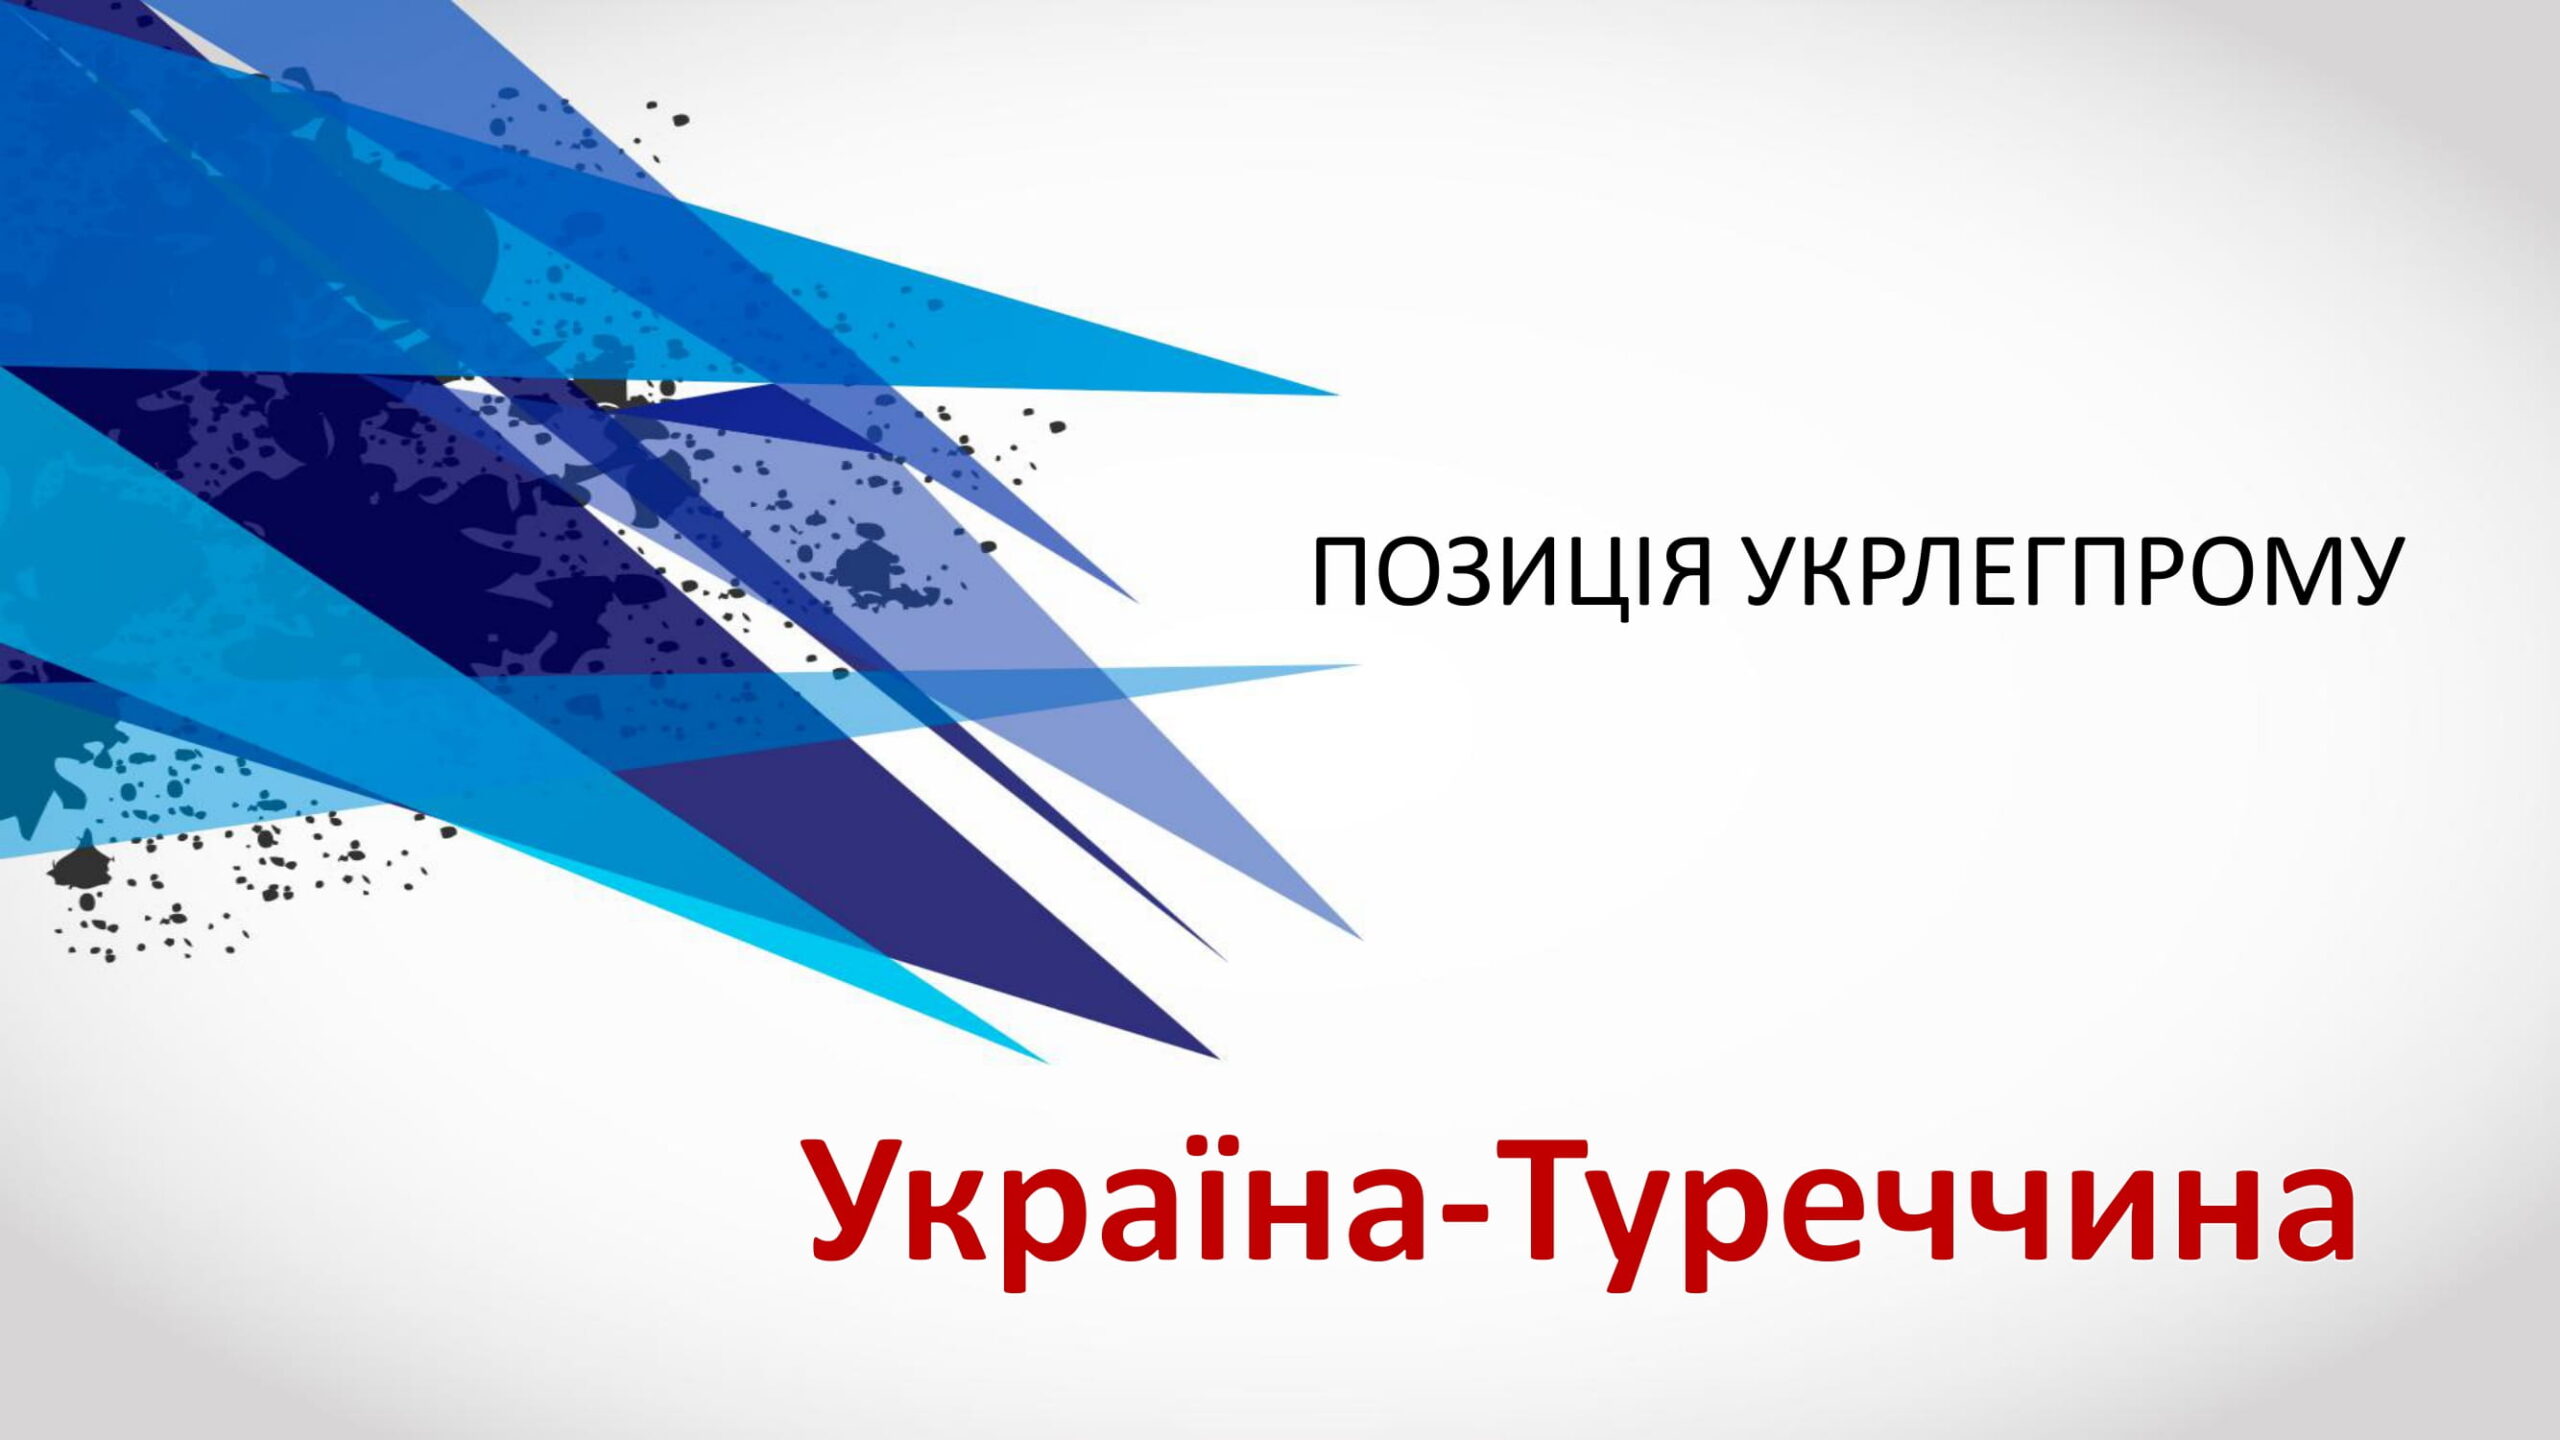 (Українська) Офіційна позиція Укрлегпрому Україна-Туреччина